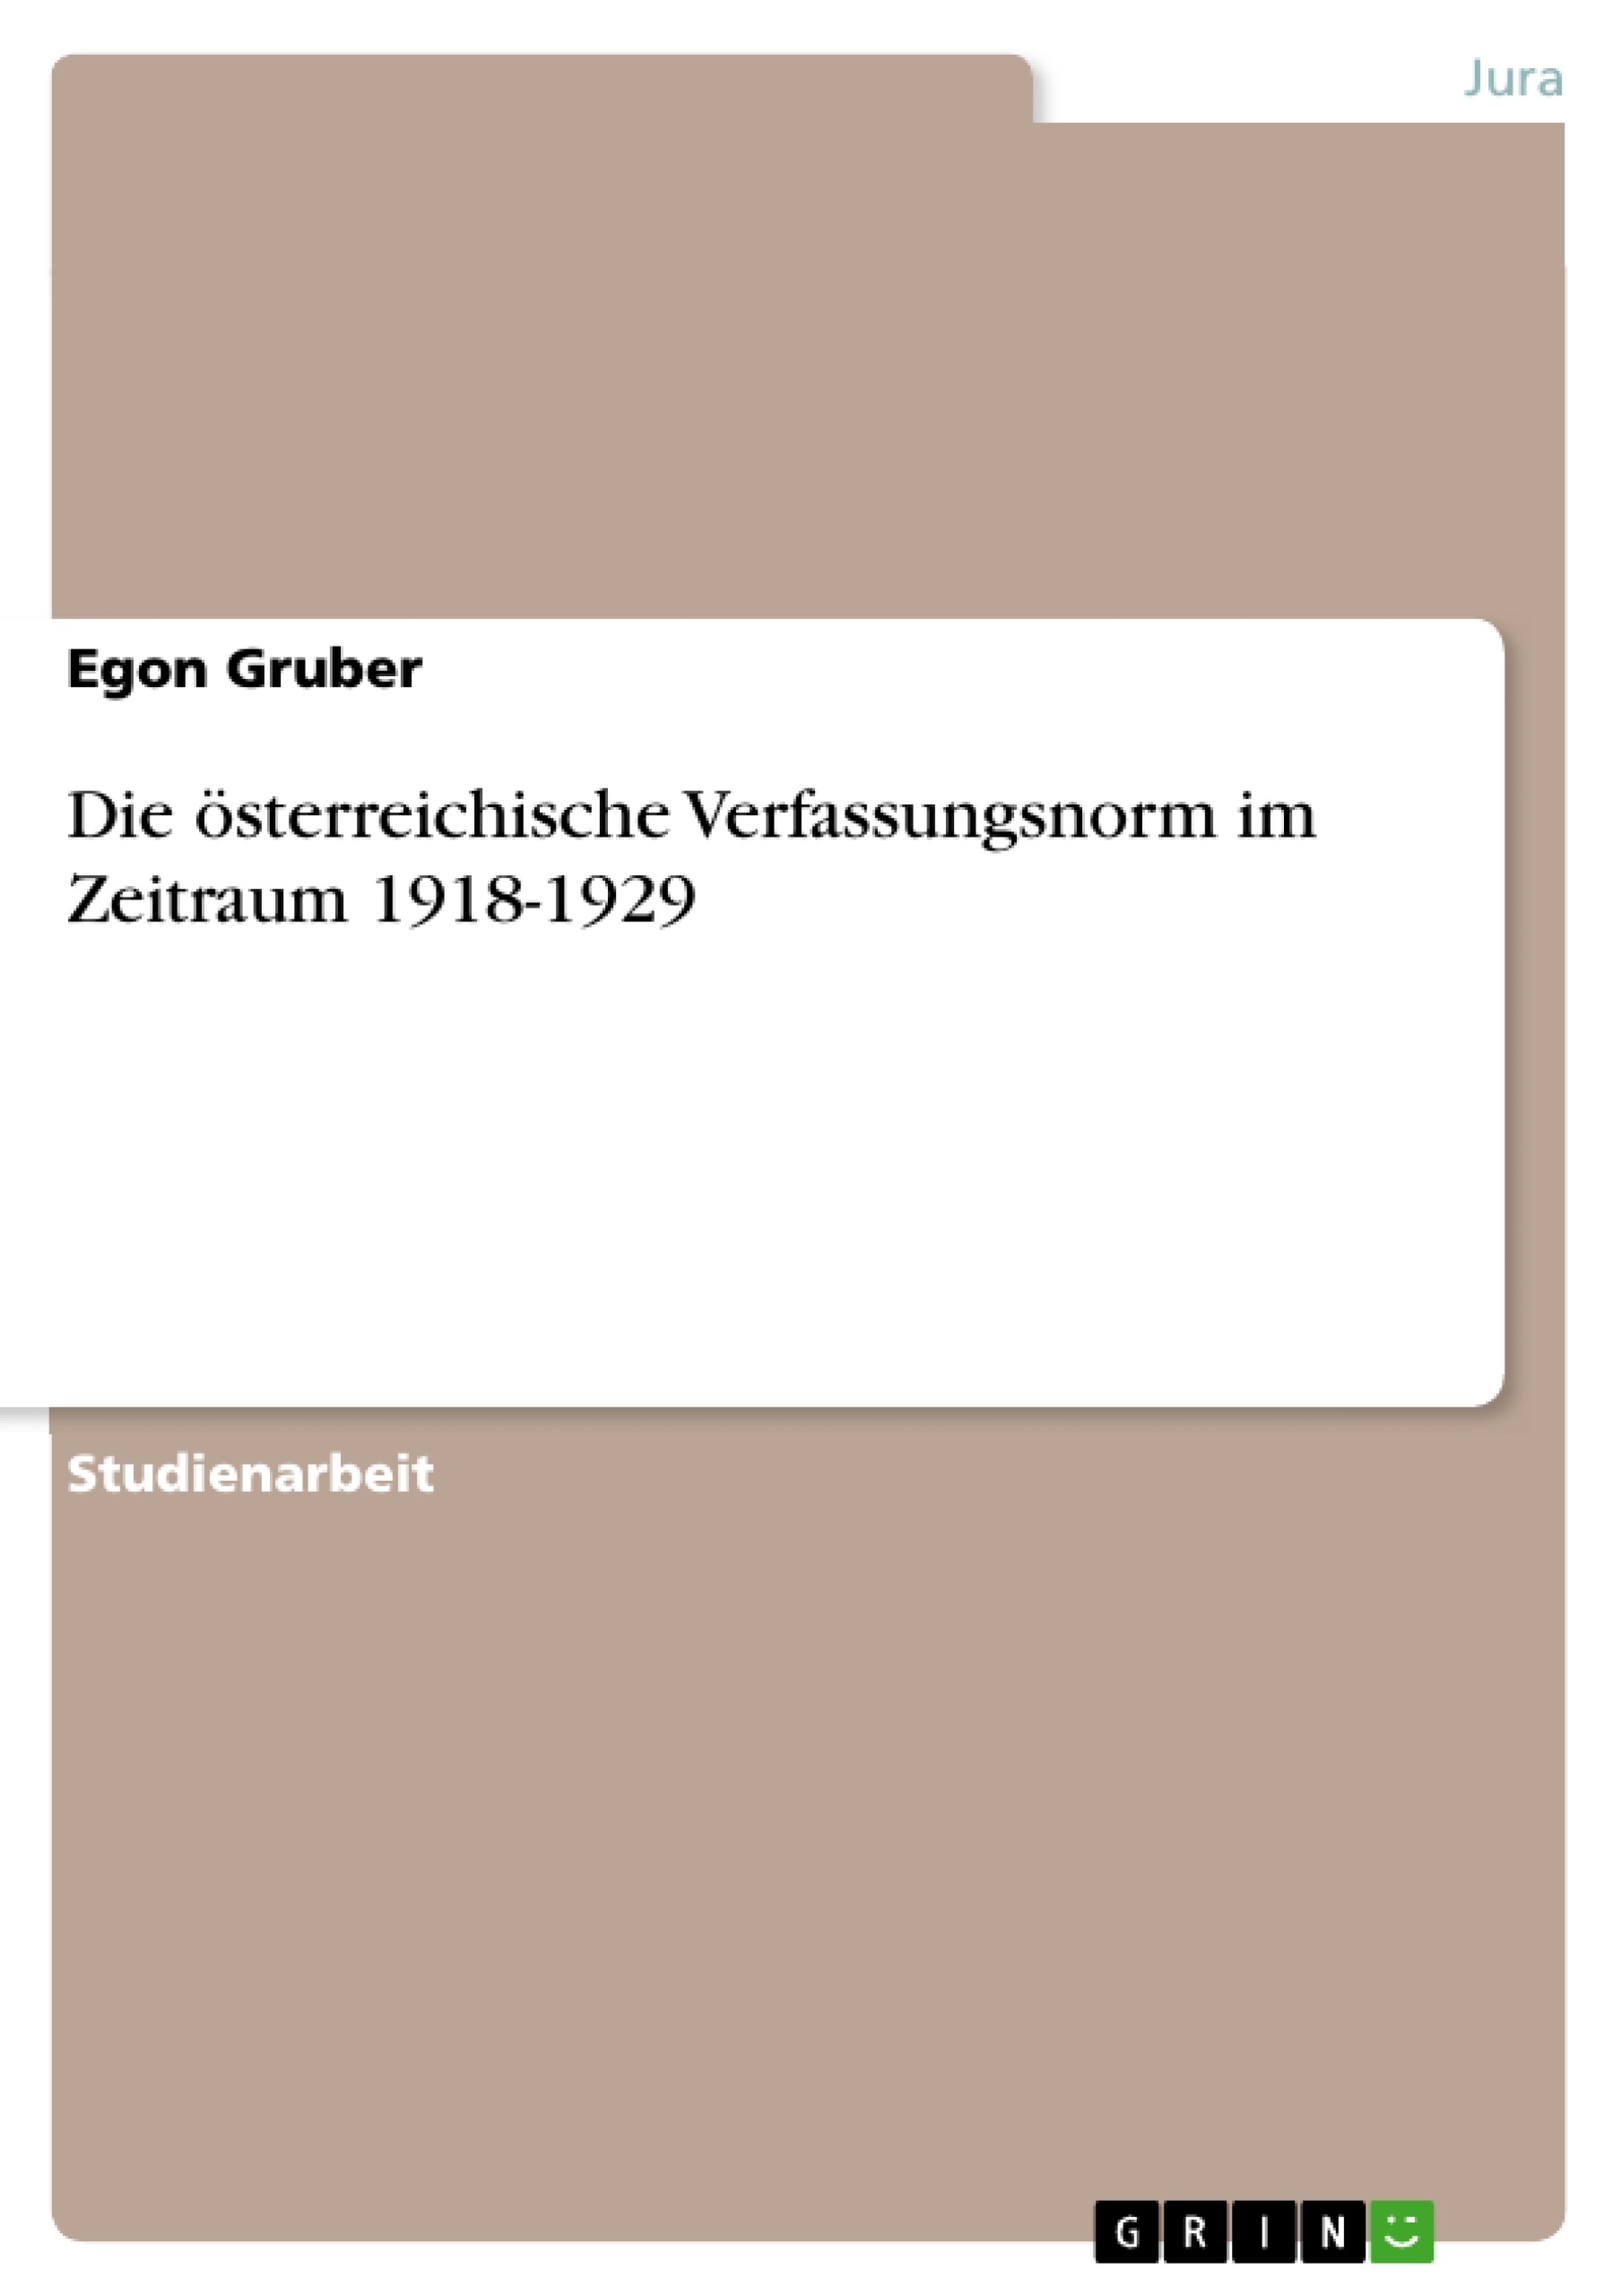 Titre: Die österreichische Verfassungsnorm im Zeitraum 1918-1929